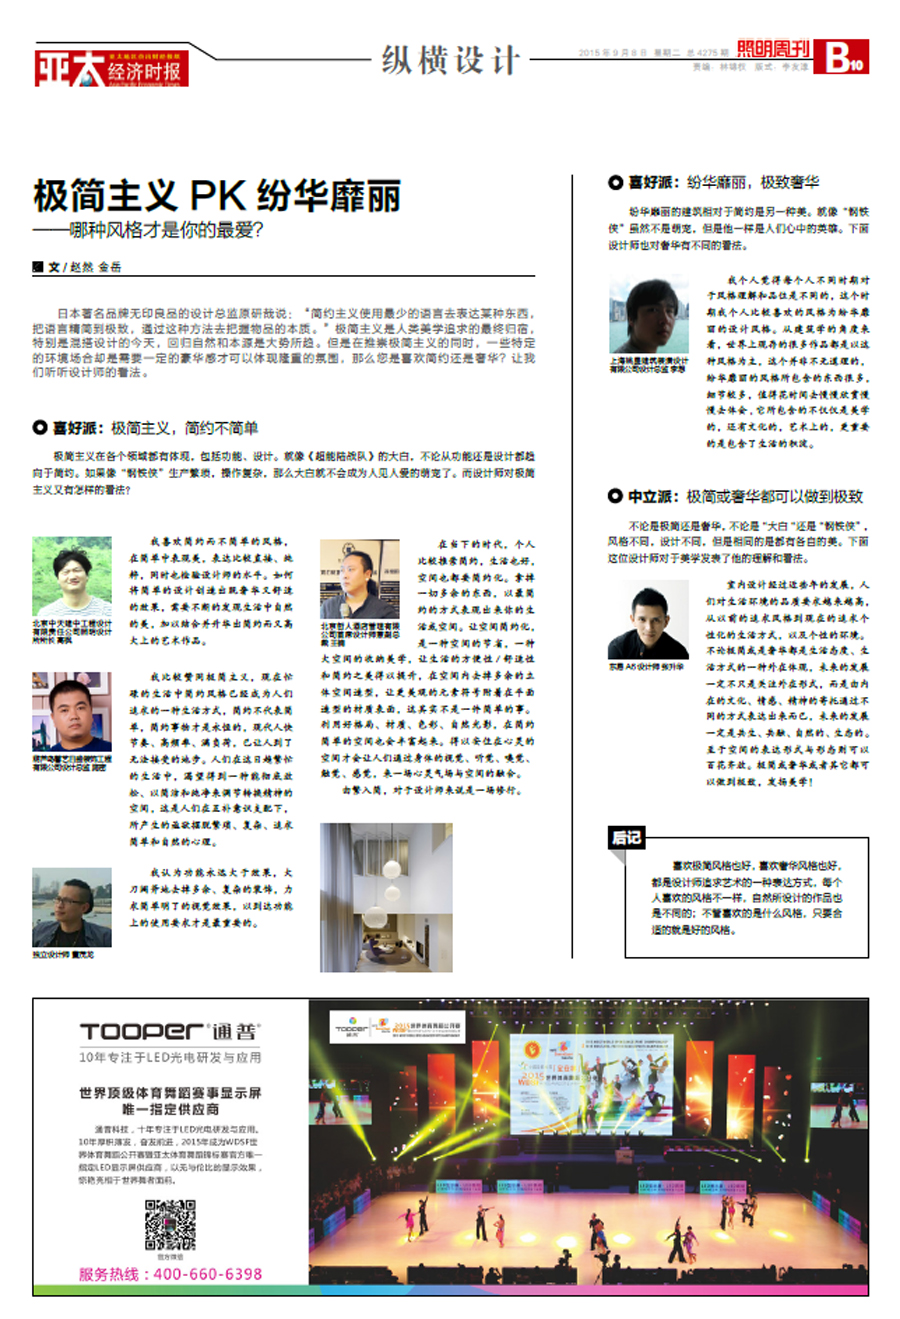 我公司设计师接受亚太经济时报337期《照明周刊》采访(图3)